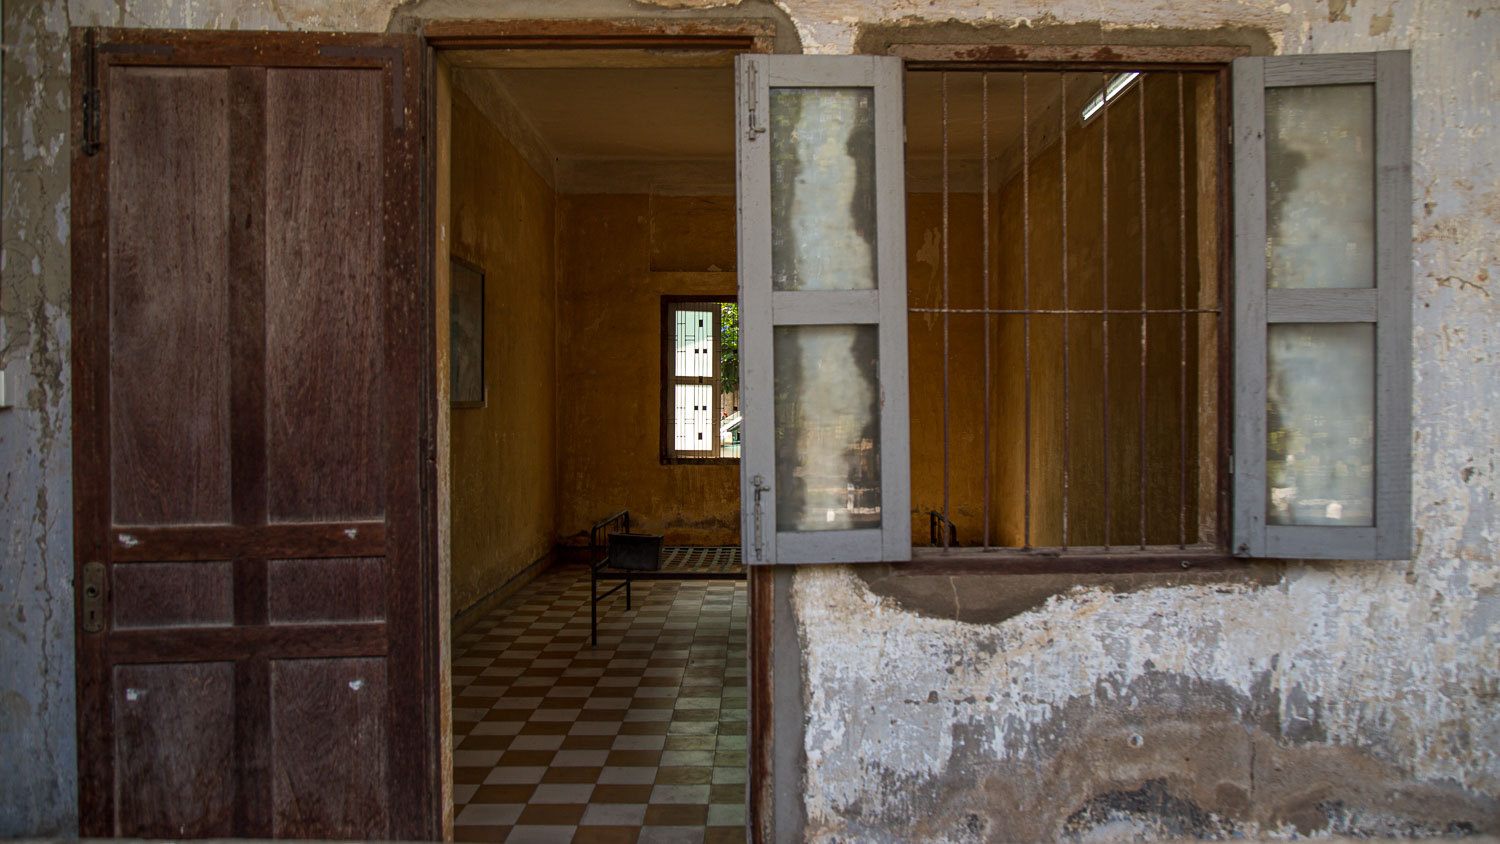 uma antiga escola transformada em centro de tortura